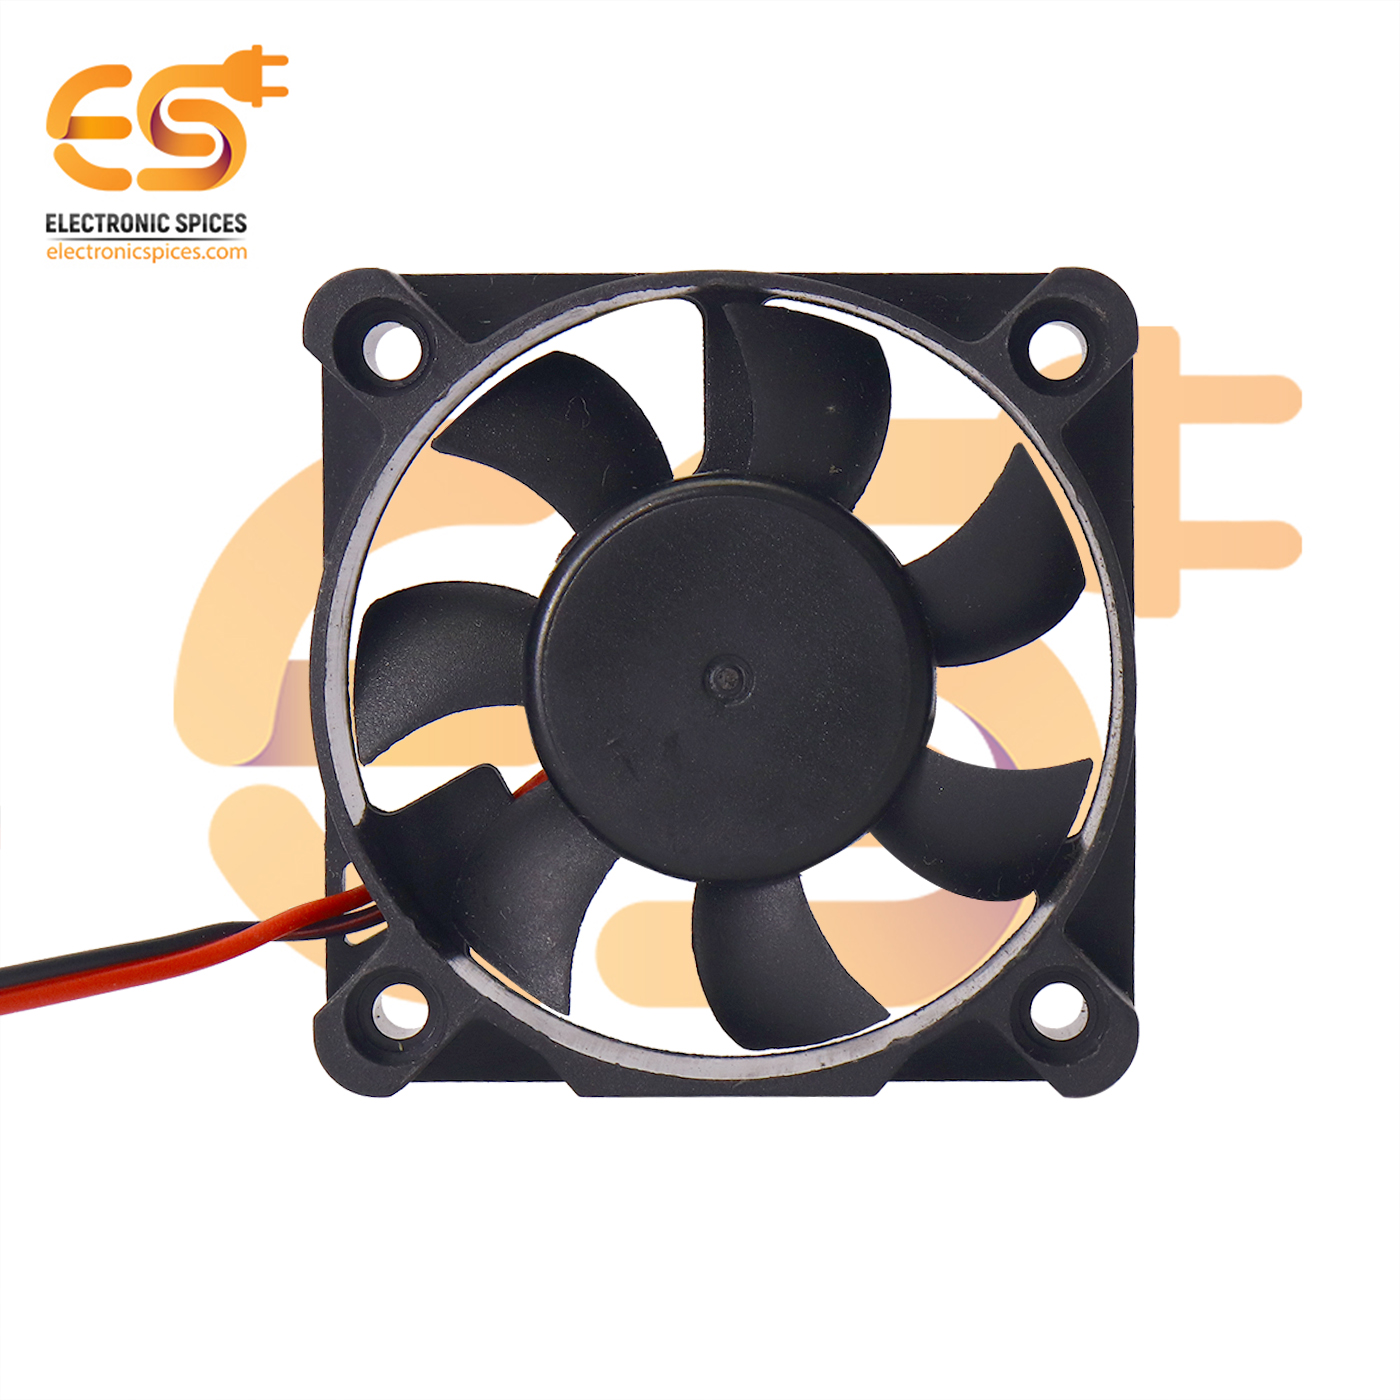 2 Pack ShareGoo 5010SH 5300RPM 5V 50mm50mm Cooling Fan for Hobbywing Ezrun 150A SL PRO V2 Brushless ESC 